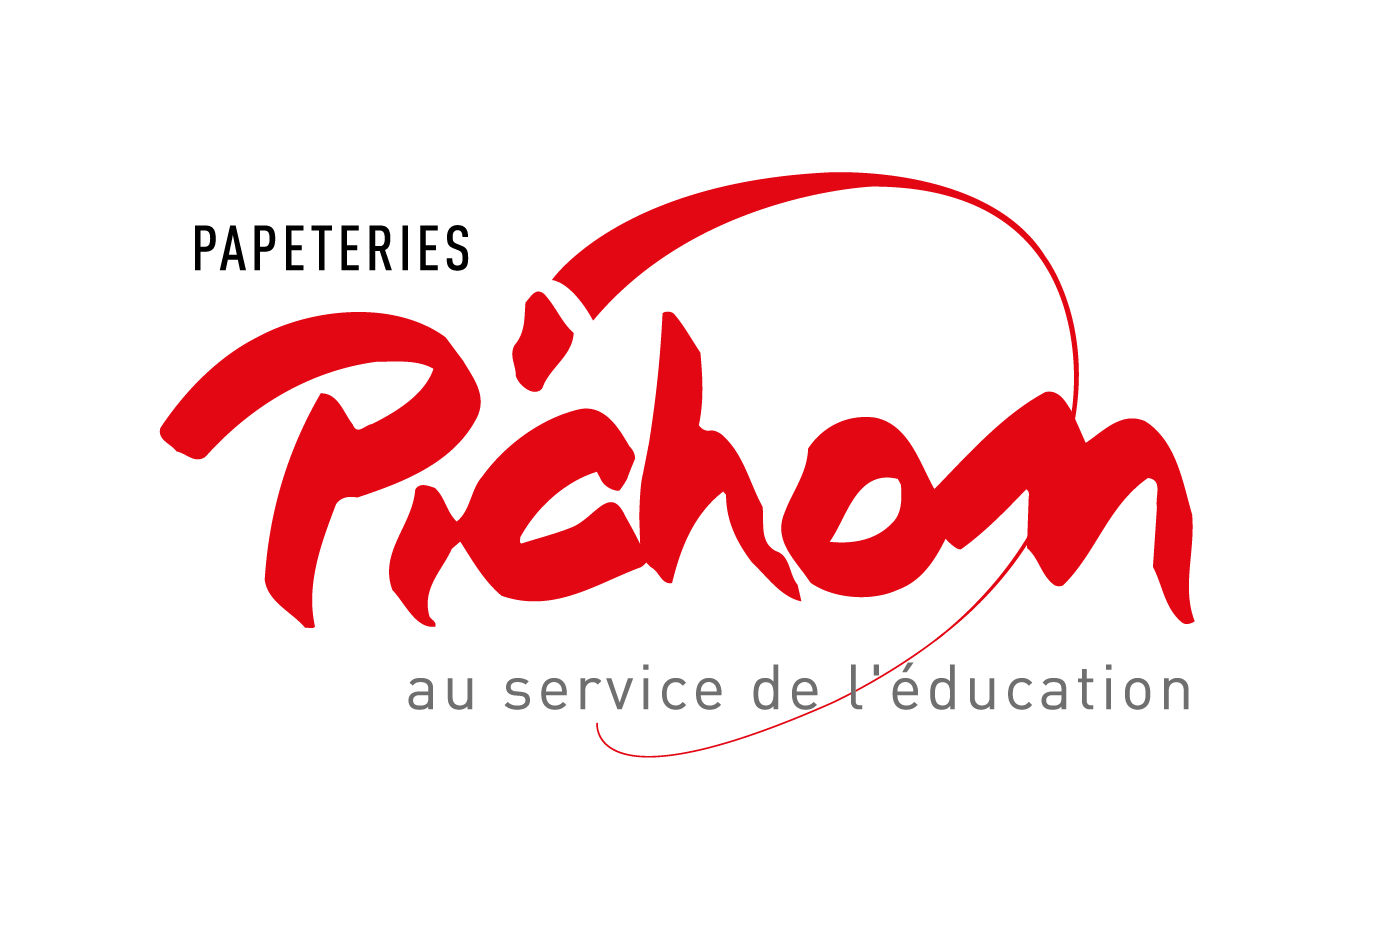 Pichon